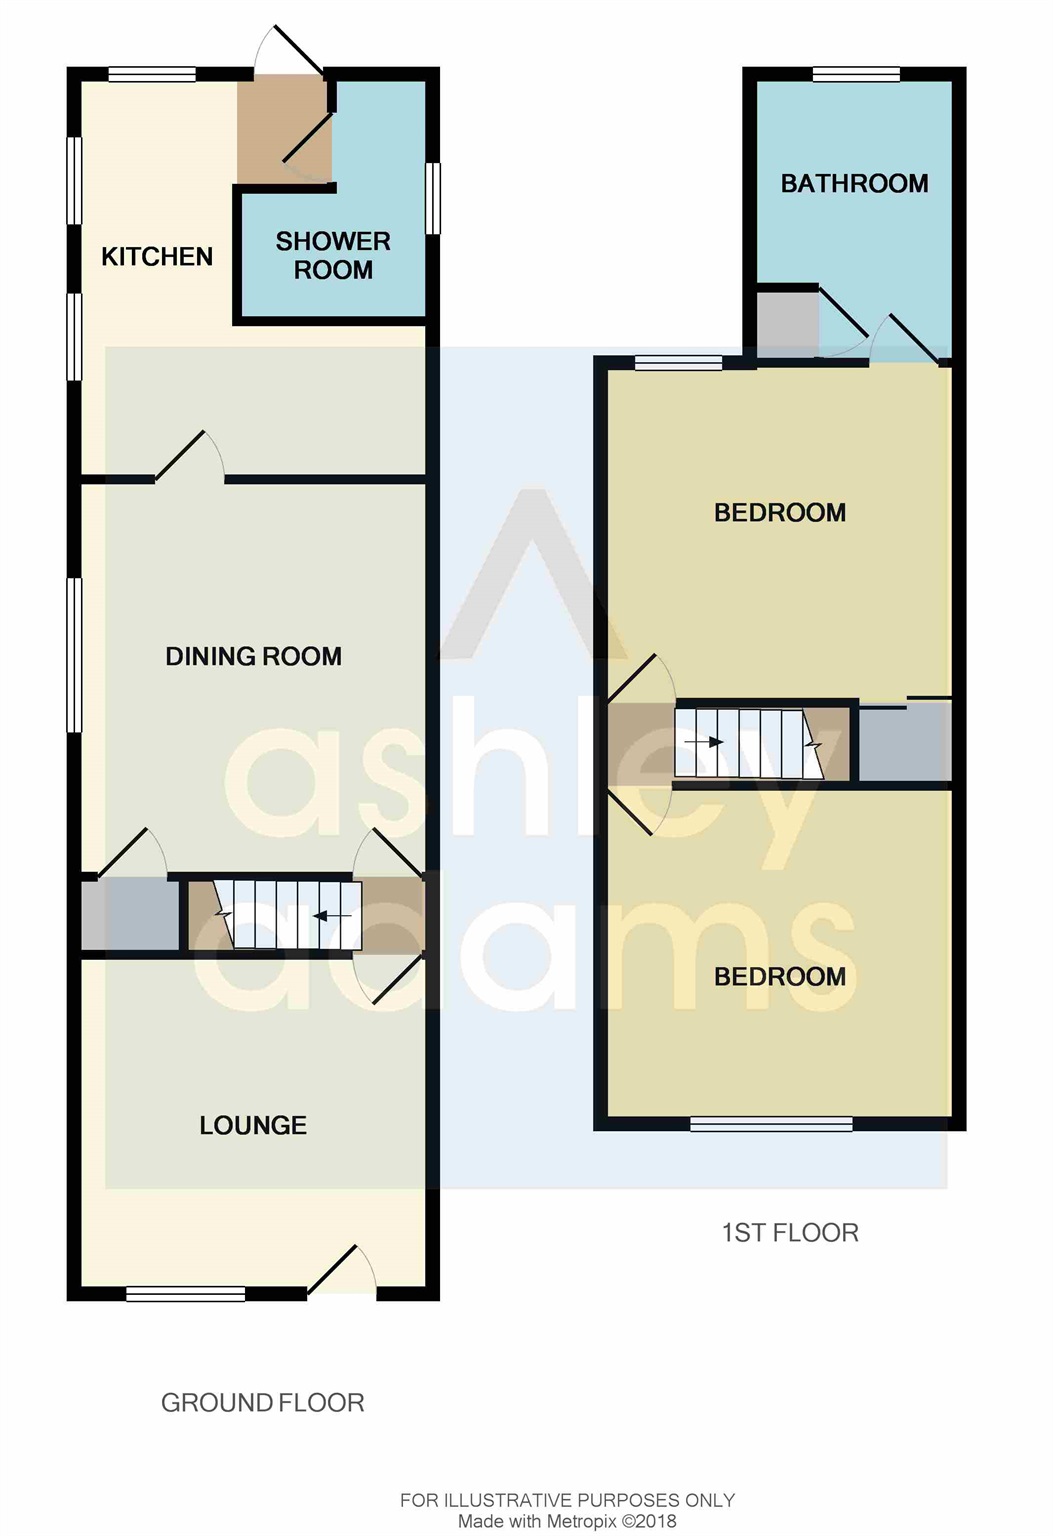 2 Bedrooms End terrace house for sale in Harrington Street, Allenton, Derby DE24